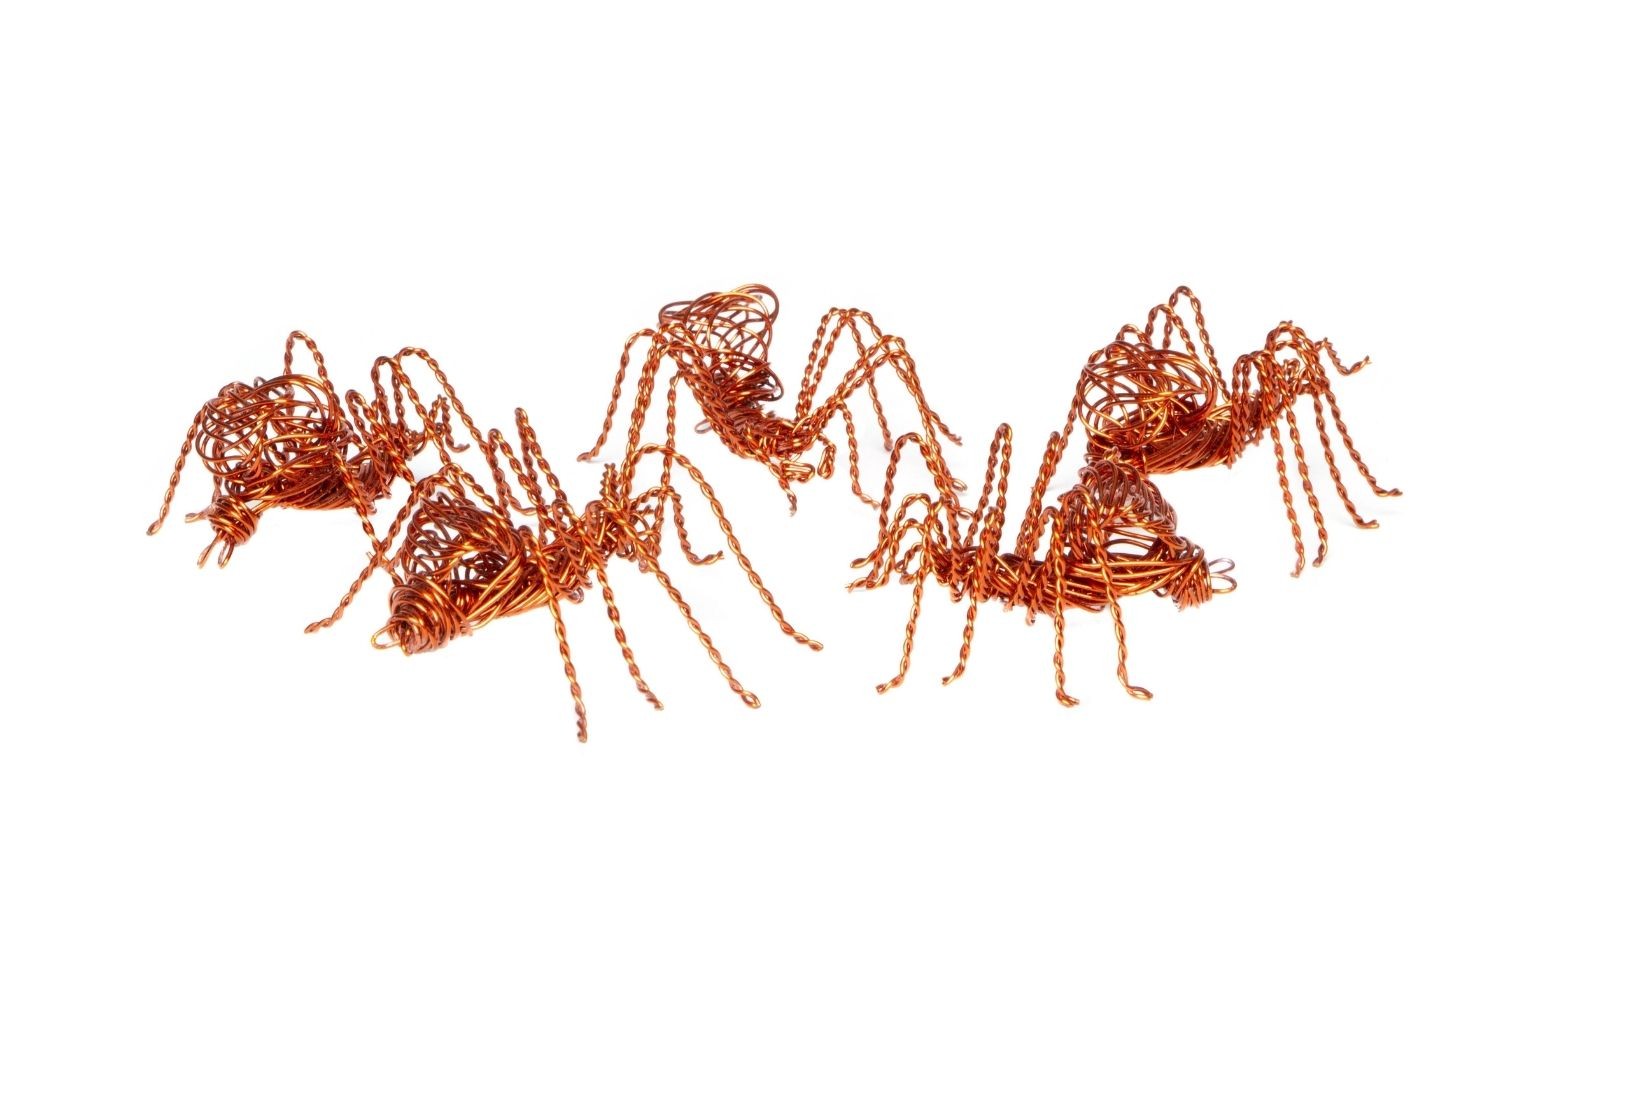 Arañas de alambre de cobre doblado, recortado y engarzado. Artesano Germán Batalla. CDMX. Col. MAP. (Foto: EKV).